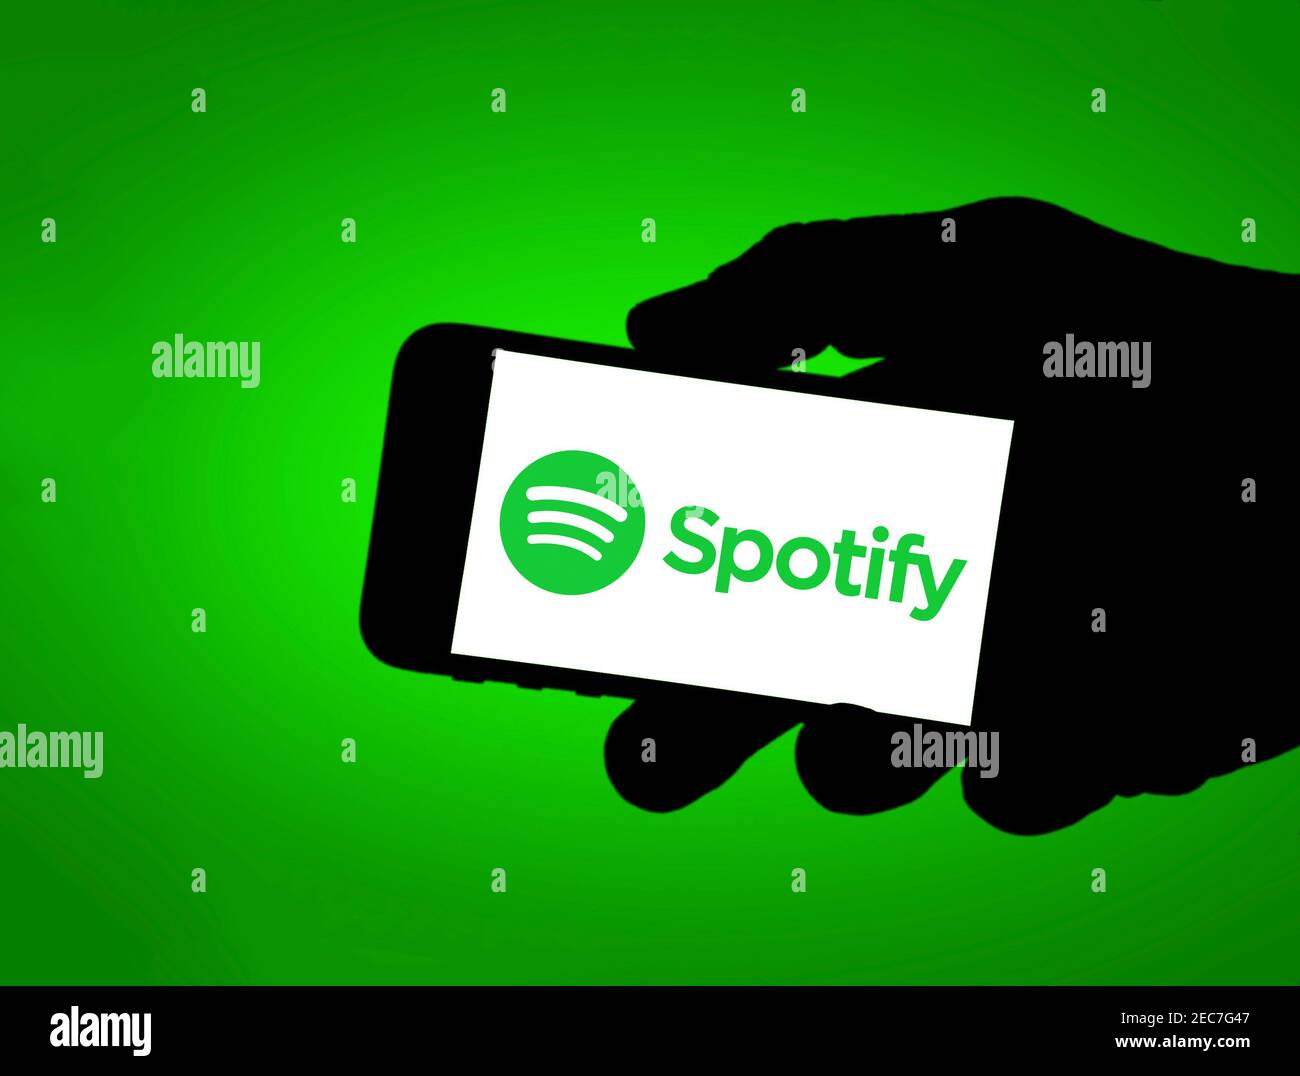 Logo Spotify sur l'appareil mobile Banque D'Images